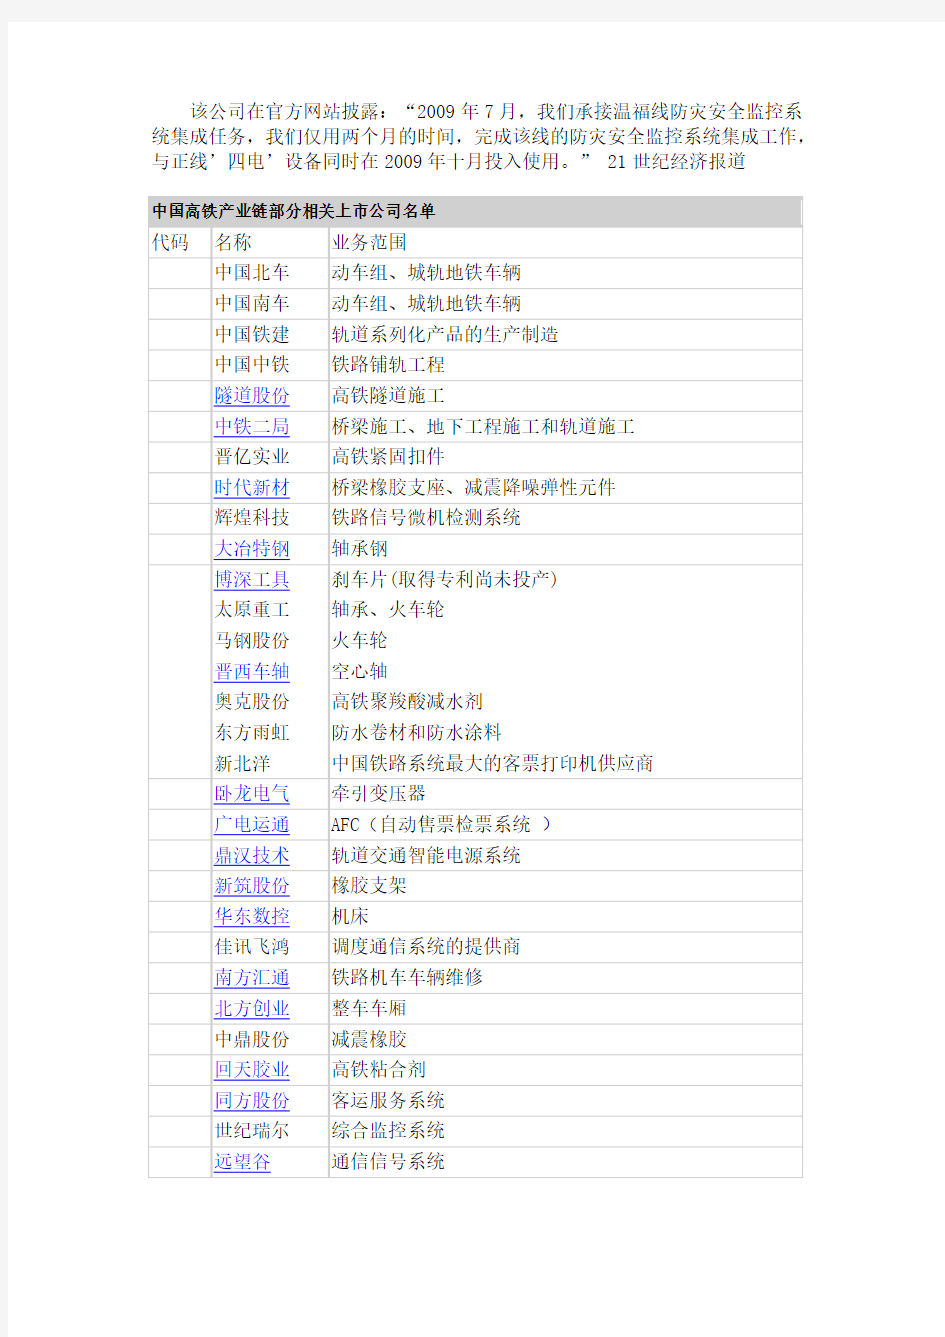 中国高铁产业链部分相关上市公司名单